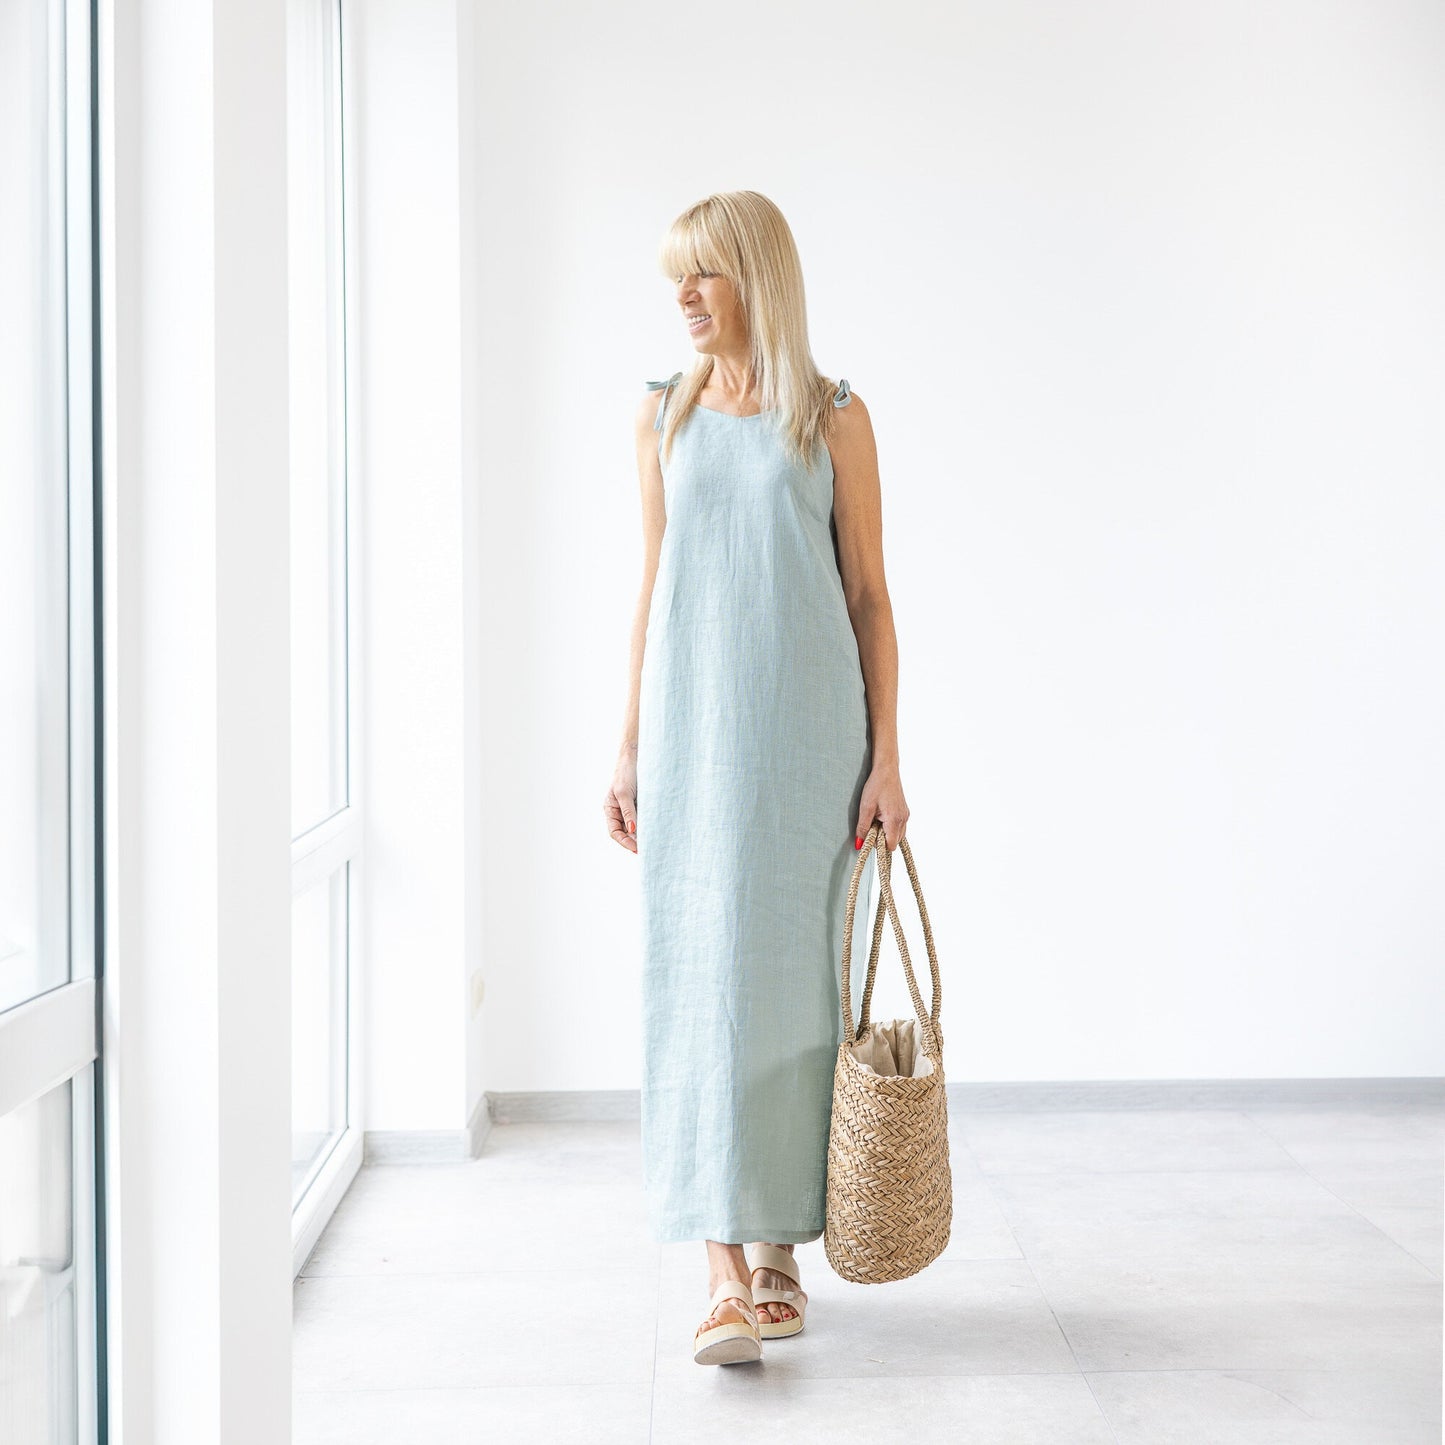 Soft Linen Dress / Handmade Dress / Minimal Linen Tunica / Baltic Linen /  Elegant Summer Dress / Fit and Flare Dress / Sleeveless Dress 